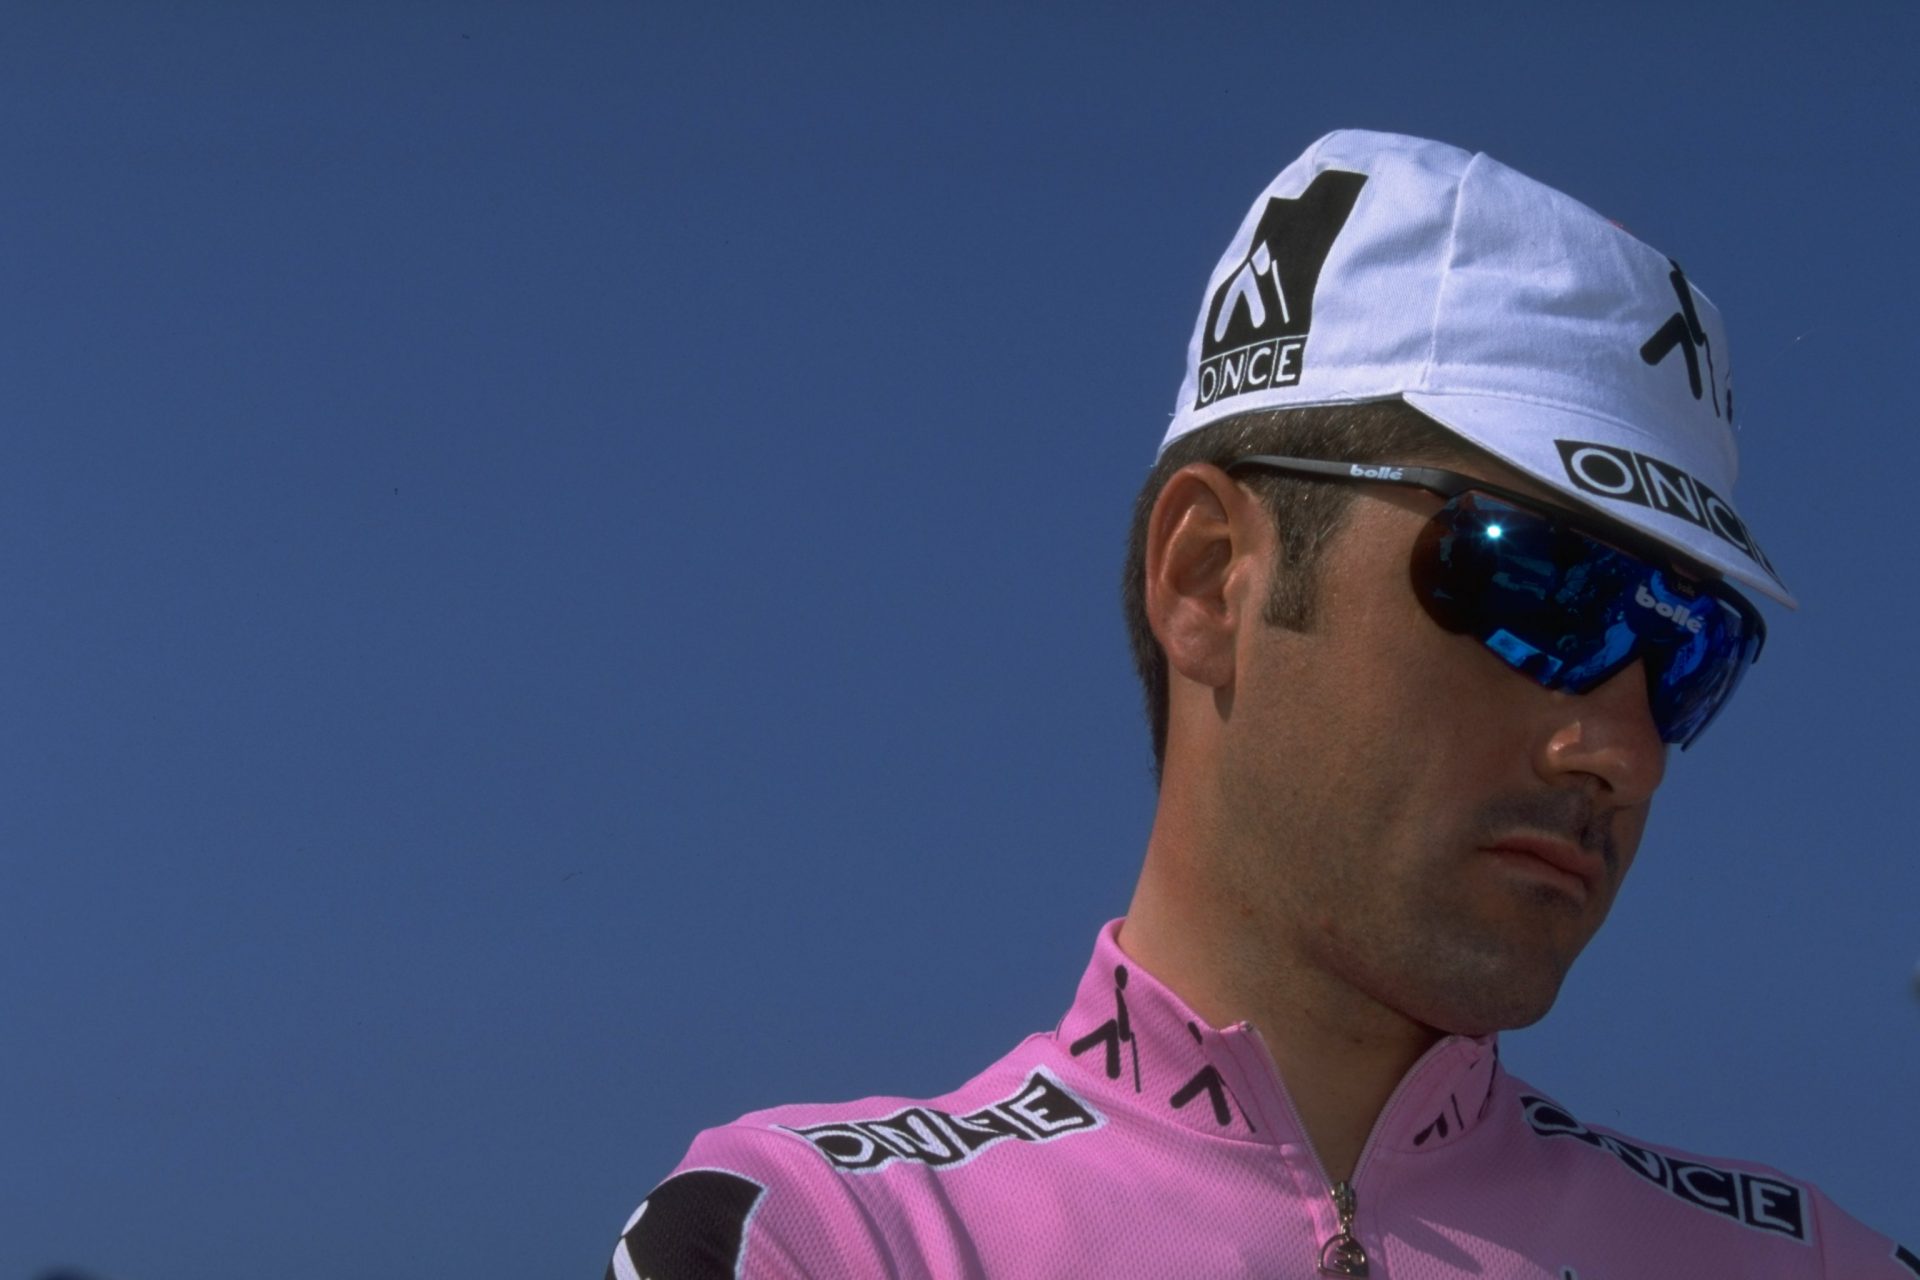 Comment Laurent Jalabert est-il passé de sprinteur à vainqueur de grand Tour ?